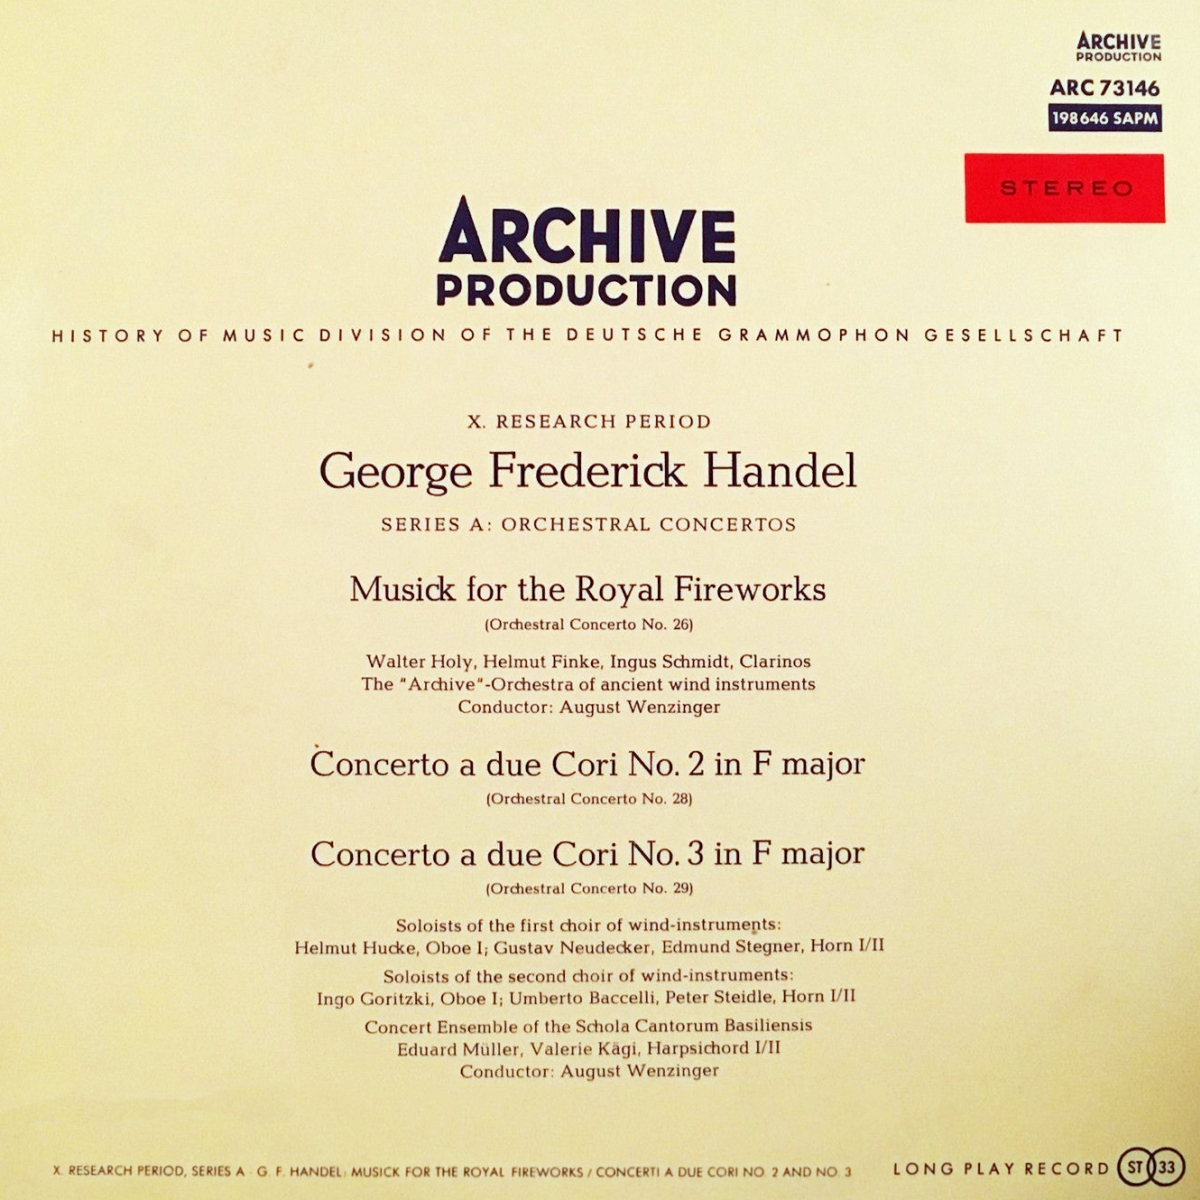 Recto pochette disque Deutsche Grammophon Archive Production ARC 73146 198646 SAPM, cliquer pour une vue agrandie